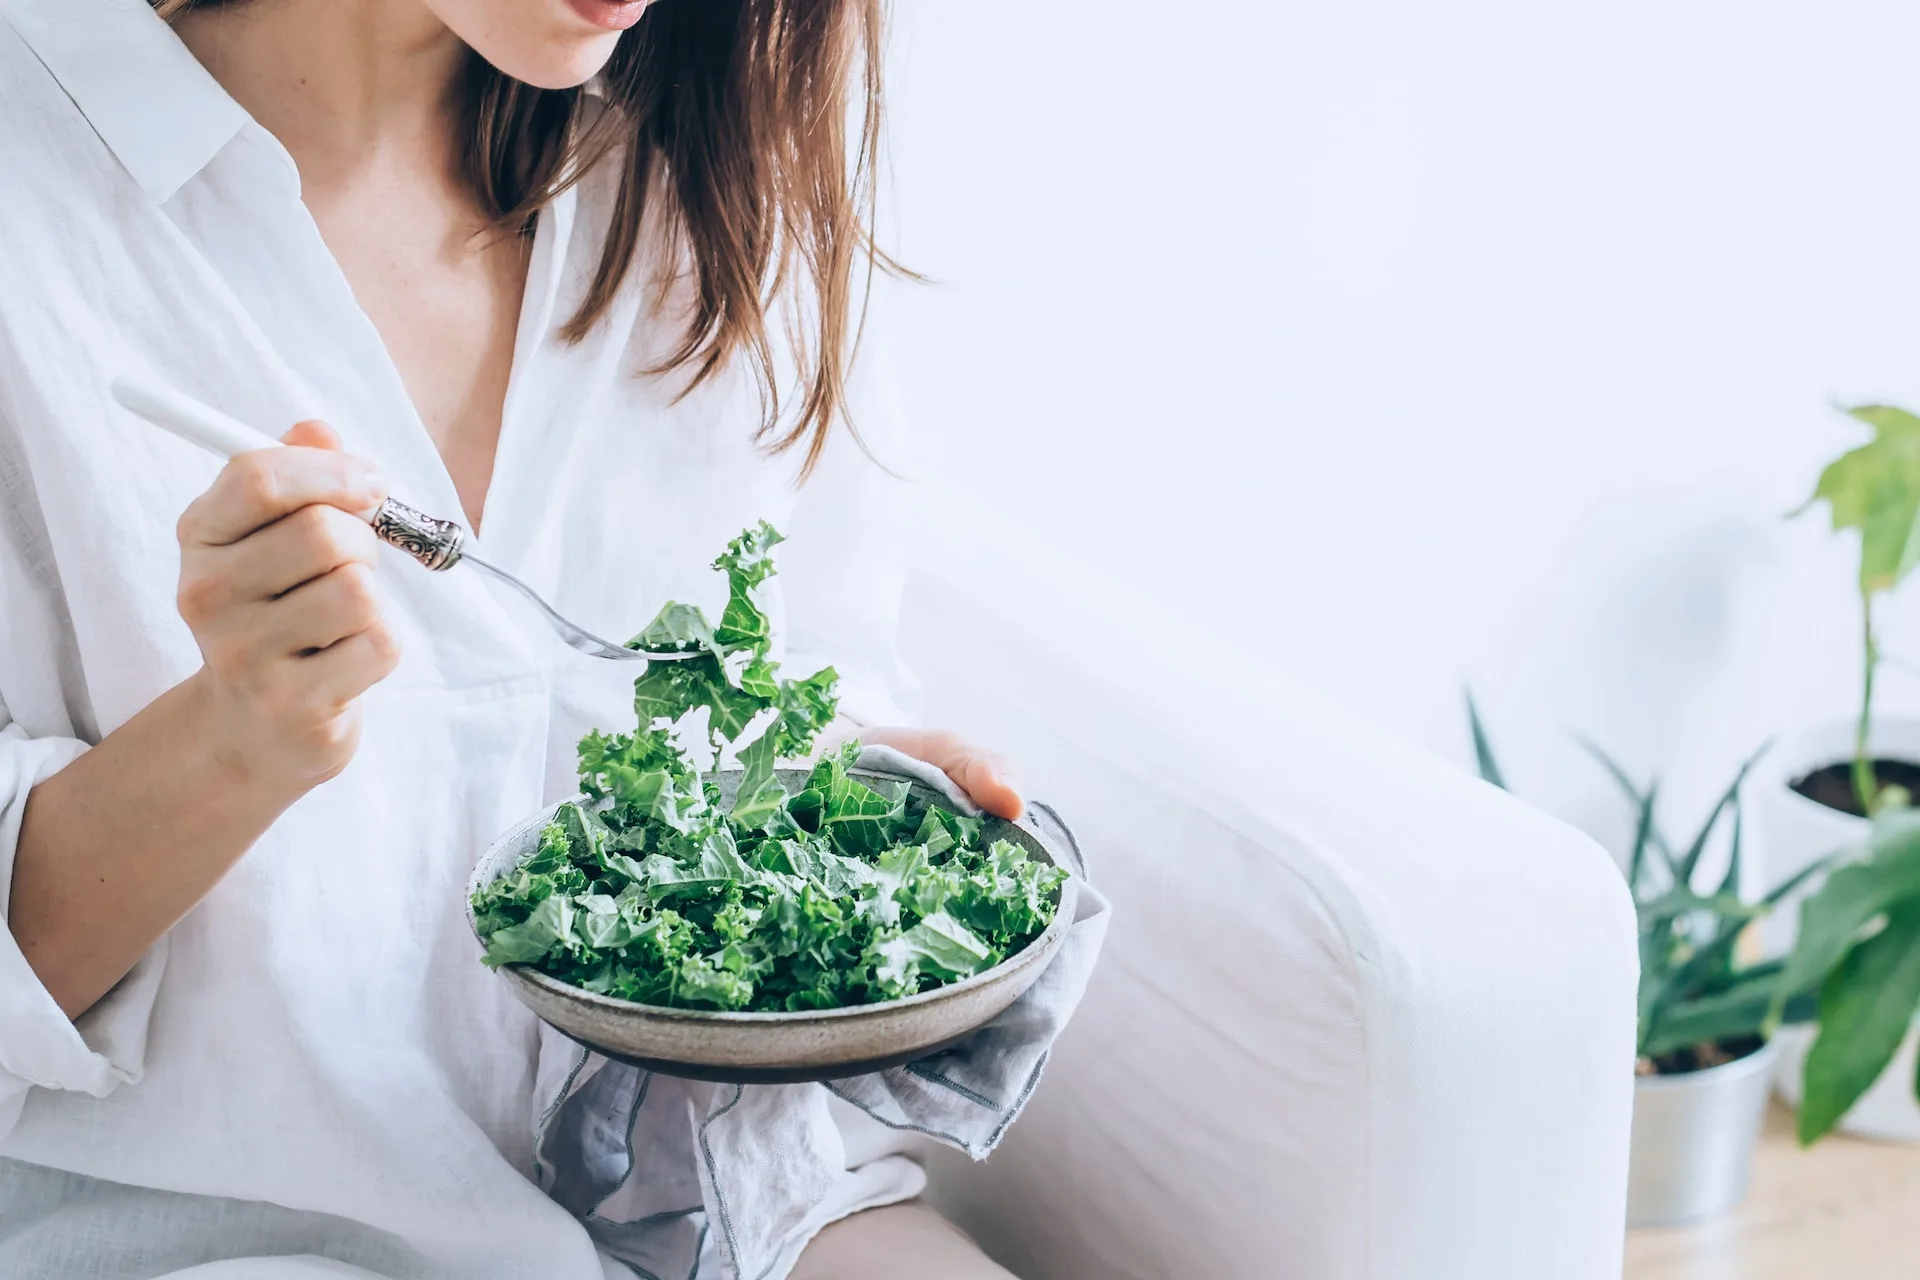 Πράσινα φυλλώδη λαχανικά: 5 facts για ροκα, σπανάκι, σπαράγγια και φύλλα παντζαριού που ωφελούν τον οργανισμό μας